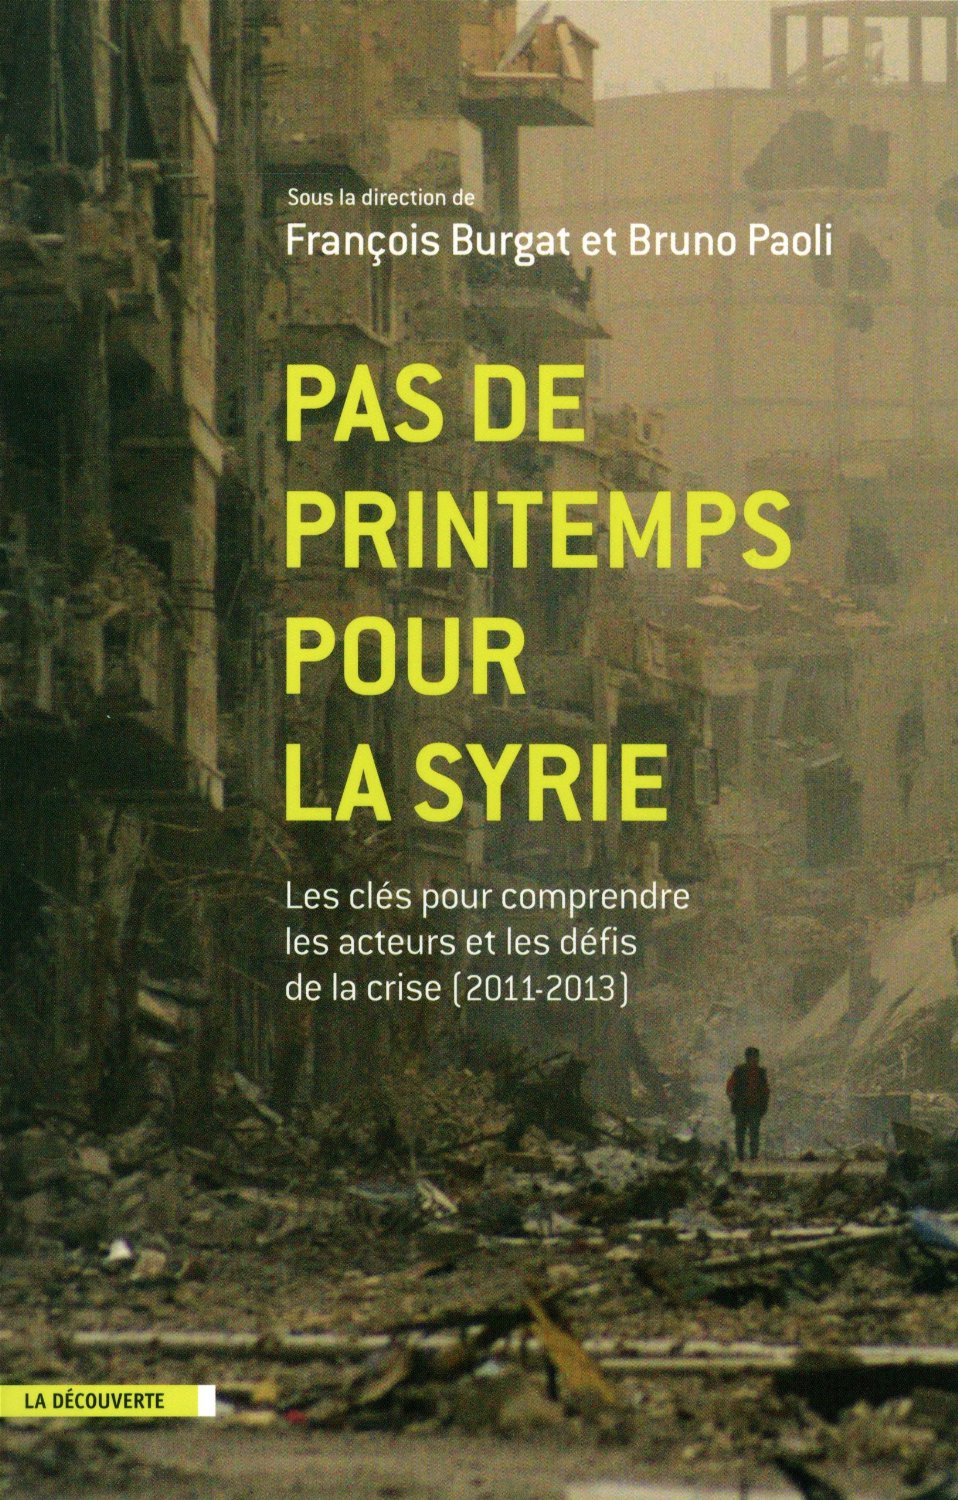 Pas de printemps pour la Syrie. Les clés pour comprendre les acteurs et les défis de la crise (2011-2013). François Burgat, Bruno Paoli (dir.)